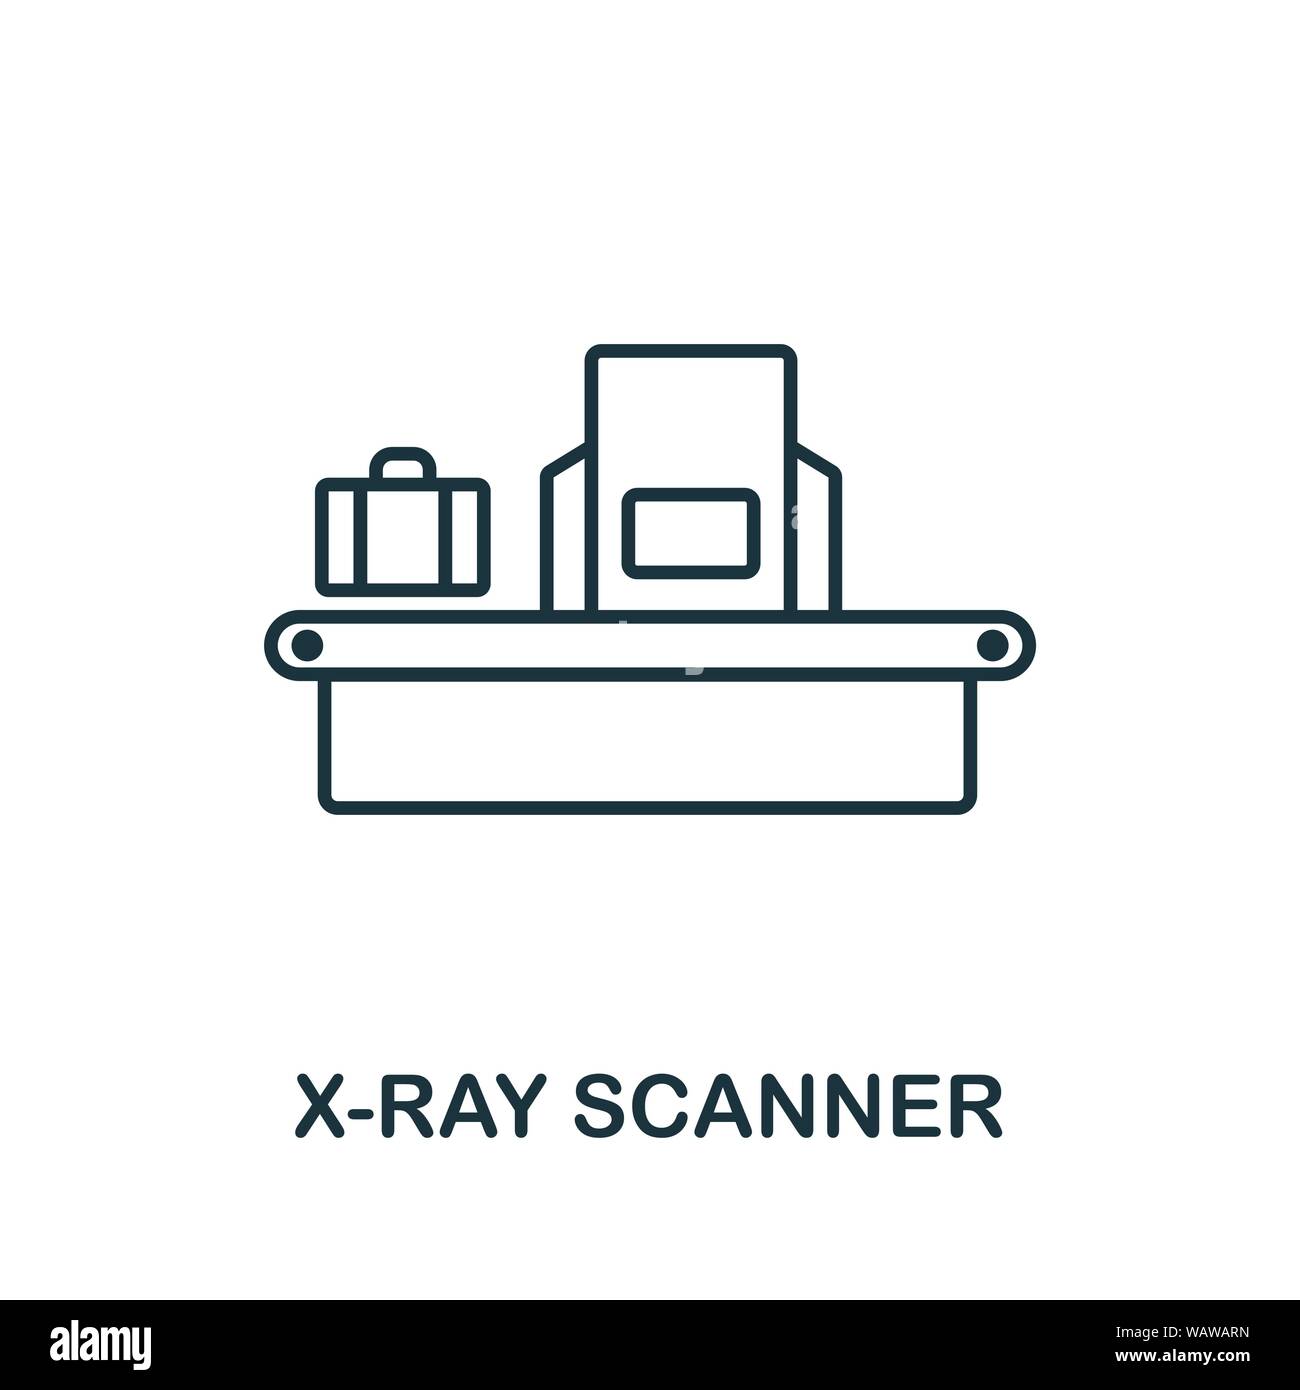 X-Ray Scanner thin line Symbol. Kreative einfache Design von Sicherheit Ikonen Sammlung. Überblick x-ray Scanner Symbol für Web Design und mobile Apps Nutzung Stock Vektor